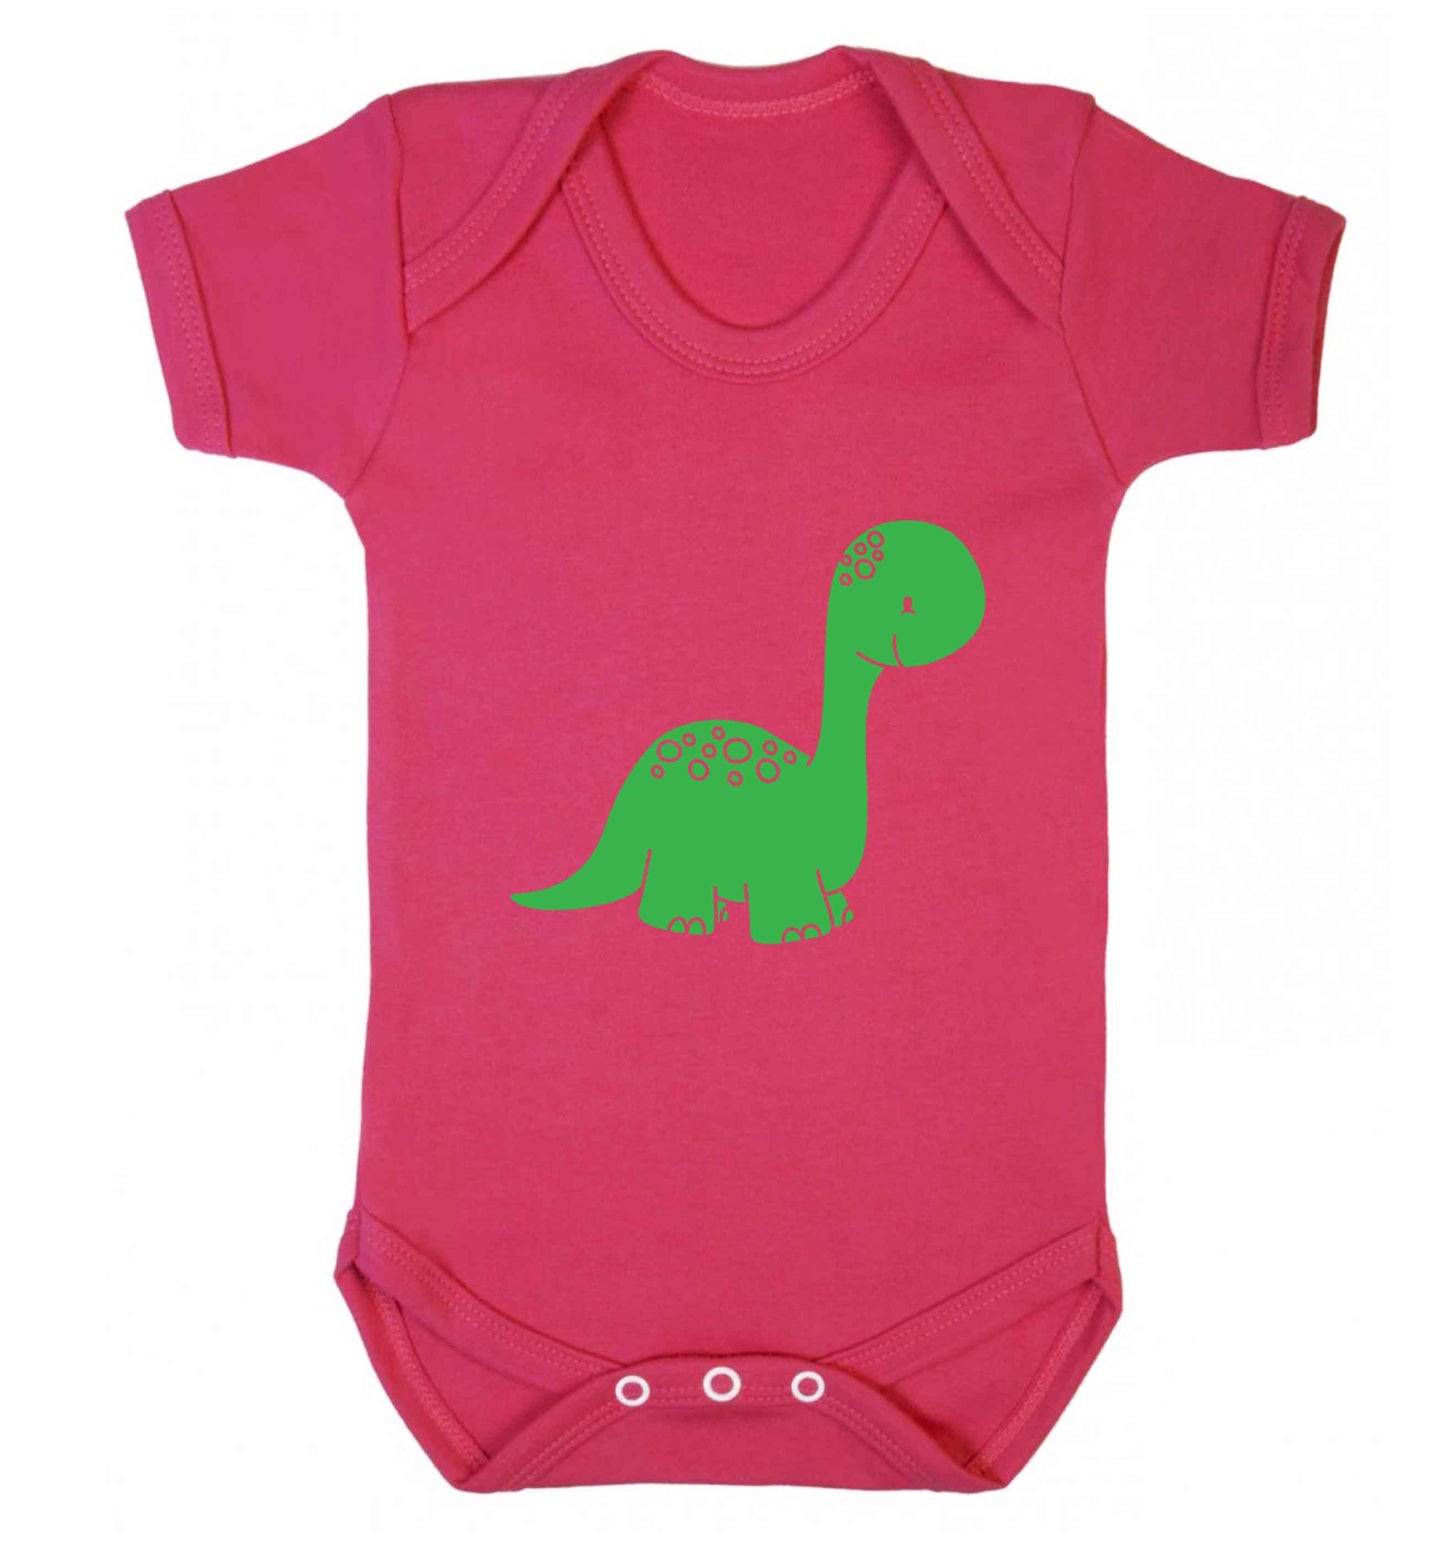 Dinosaur illustration baby vest dark pink 18-24 months